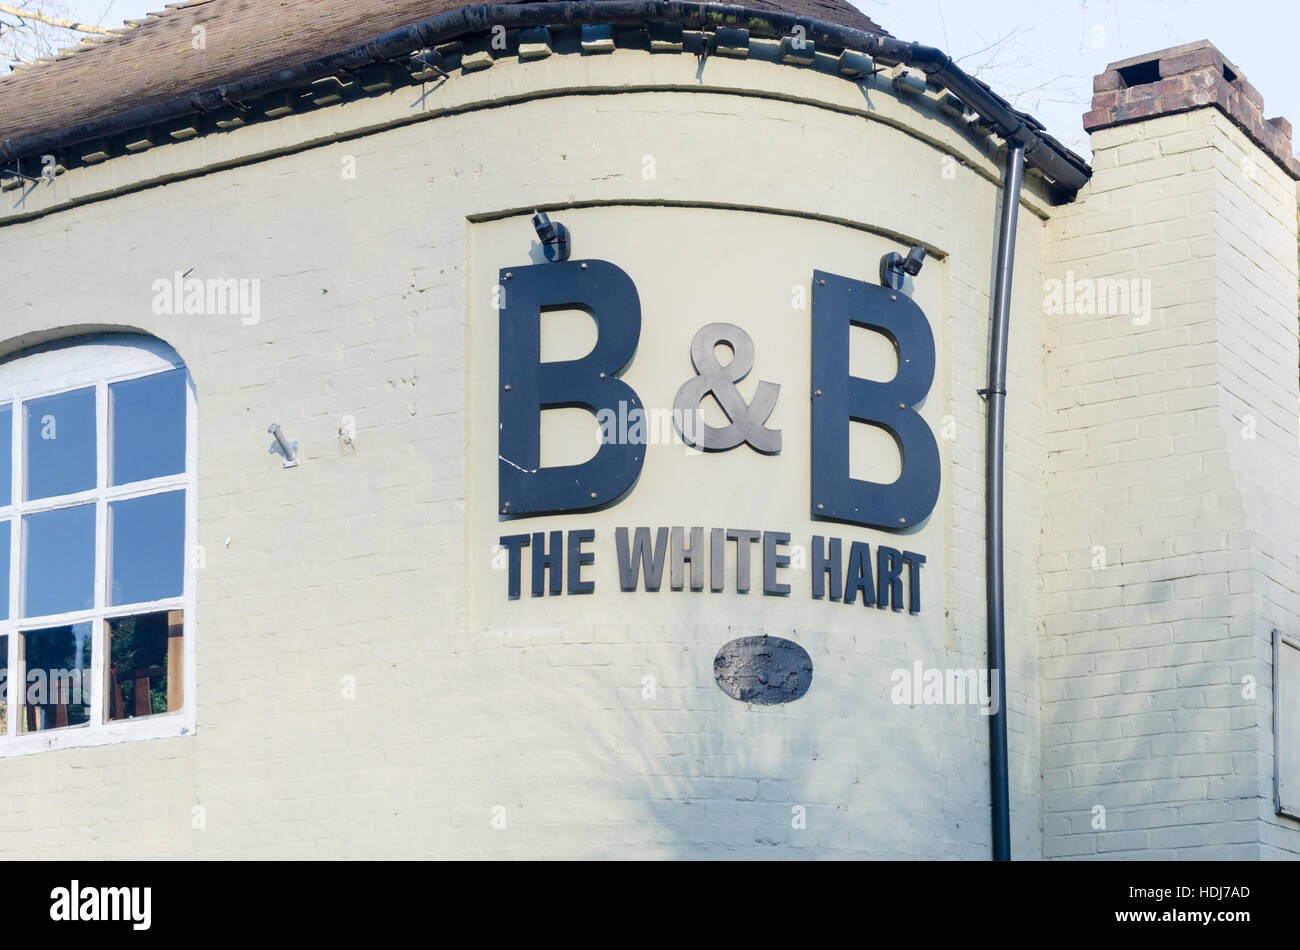 The White Hart B&B in Ironbridge, Shropshire Stock Photo